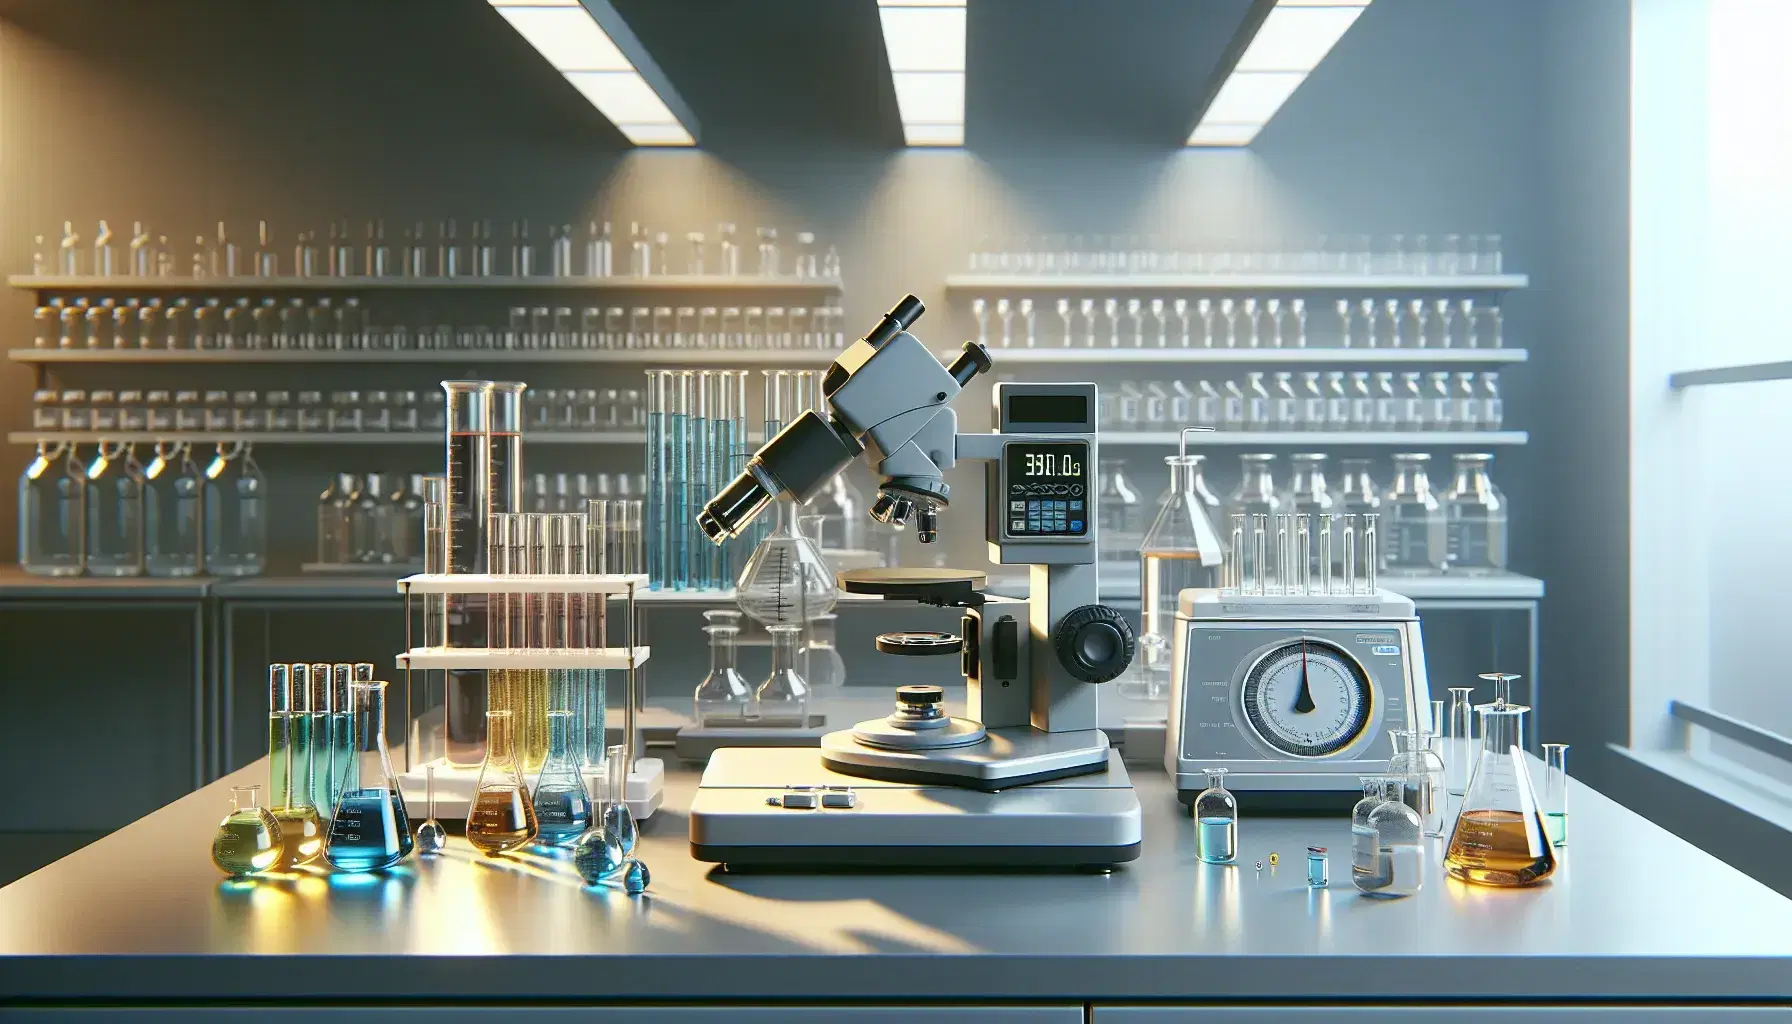 Laboratorio scientifico con microscopio, provette colorate, bilancia analitica digitale e cilindro graduato su tavolo centrale sotto luce fluorescente.